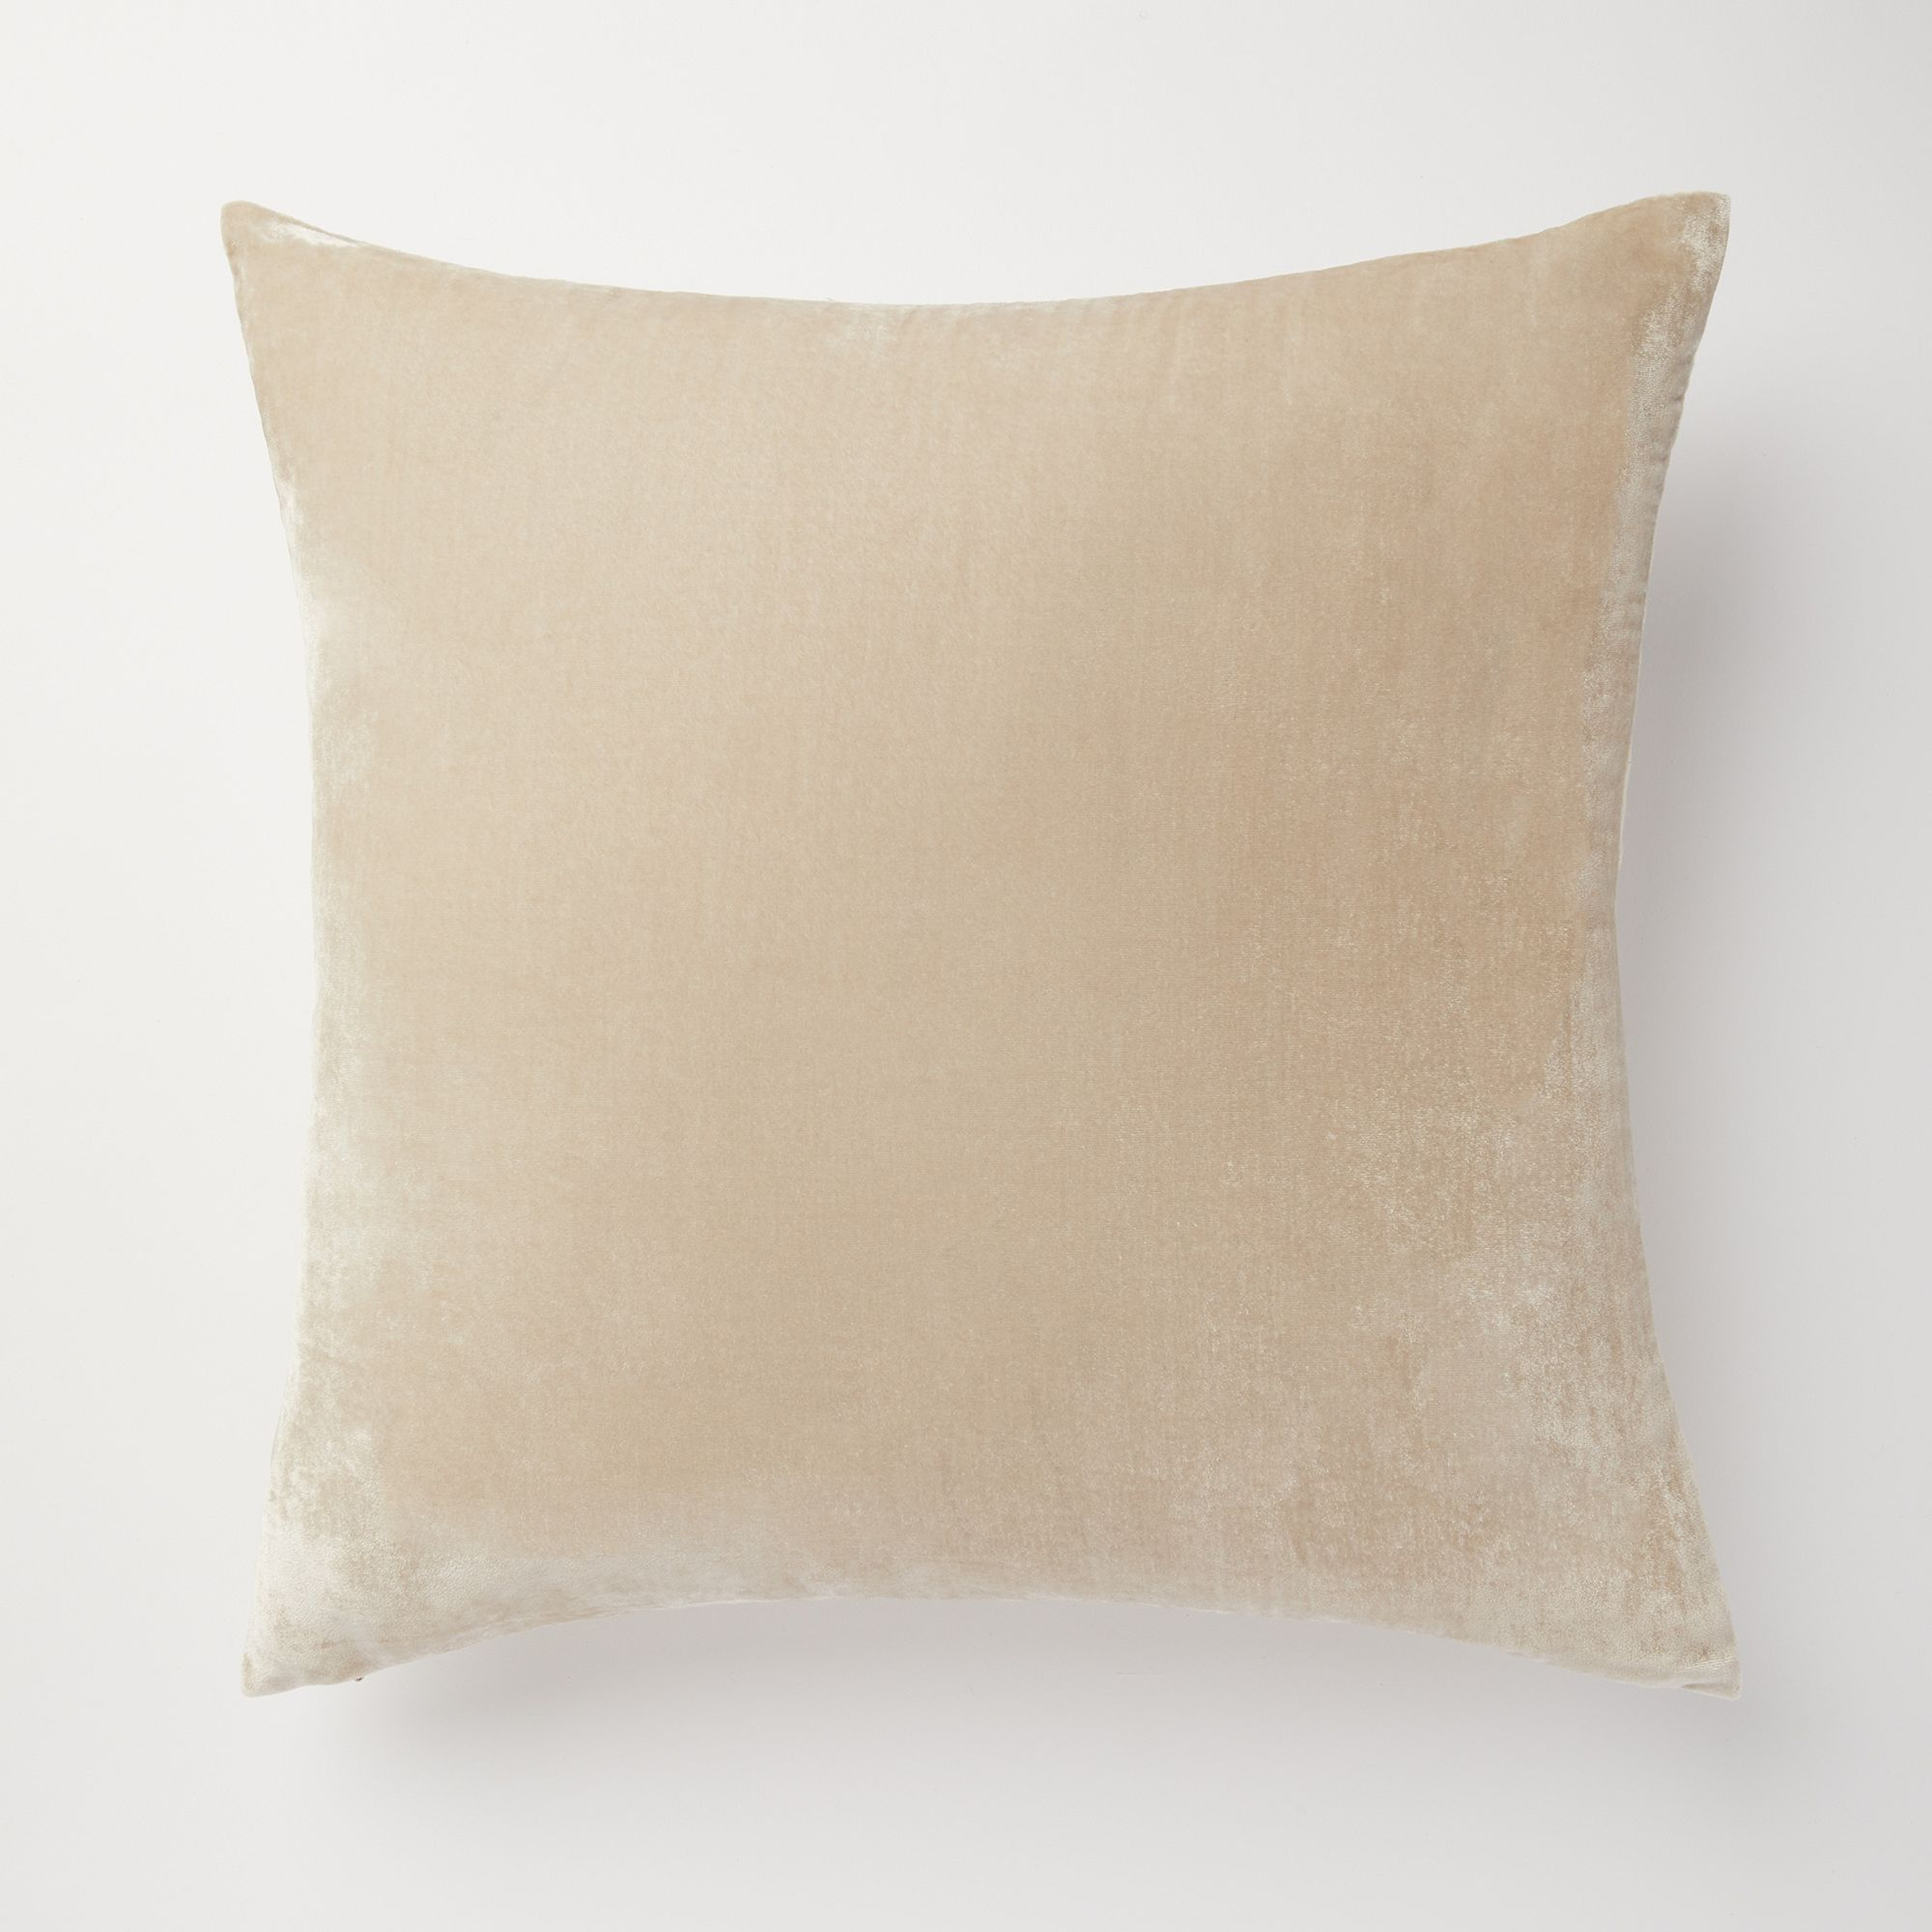 Lush Velvet Pillow Cover, Sand, 20x20 - West Elm